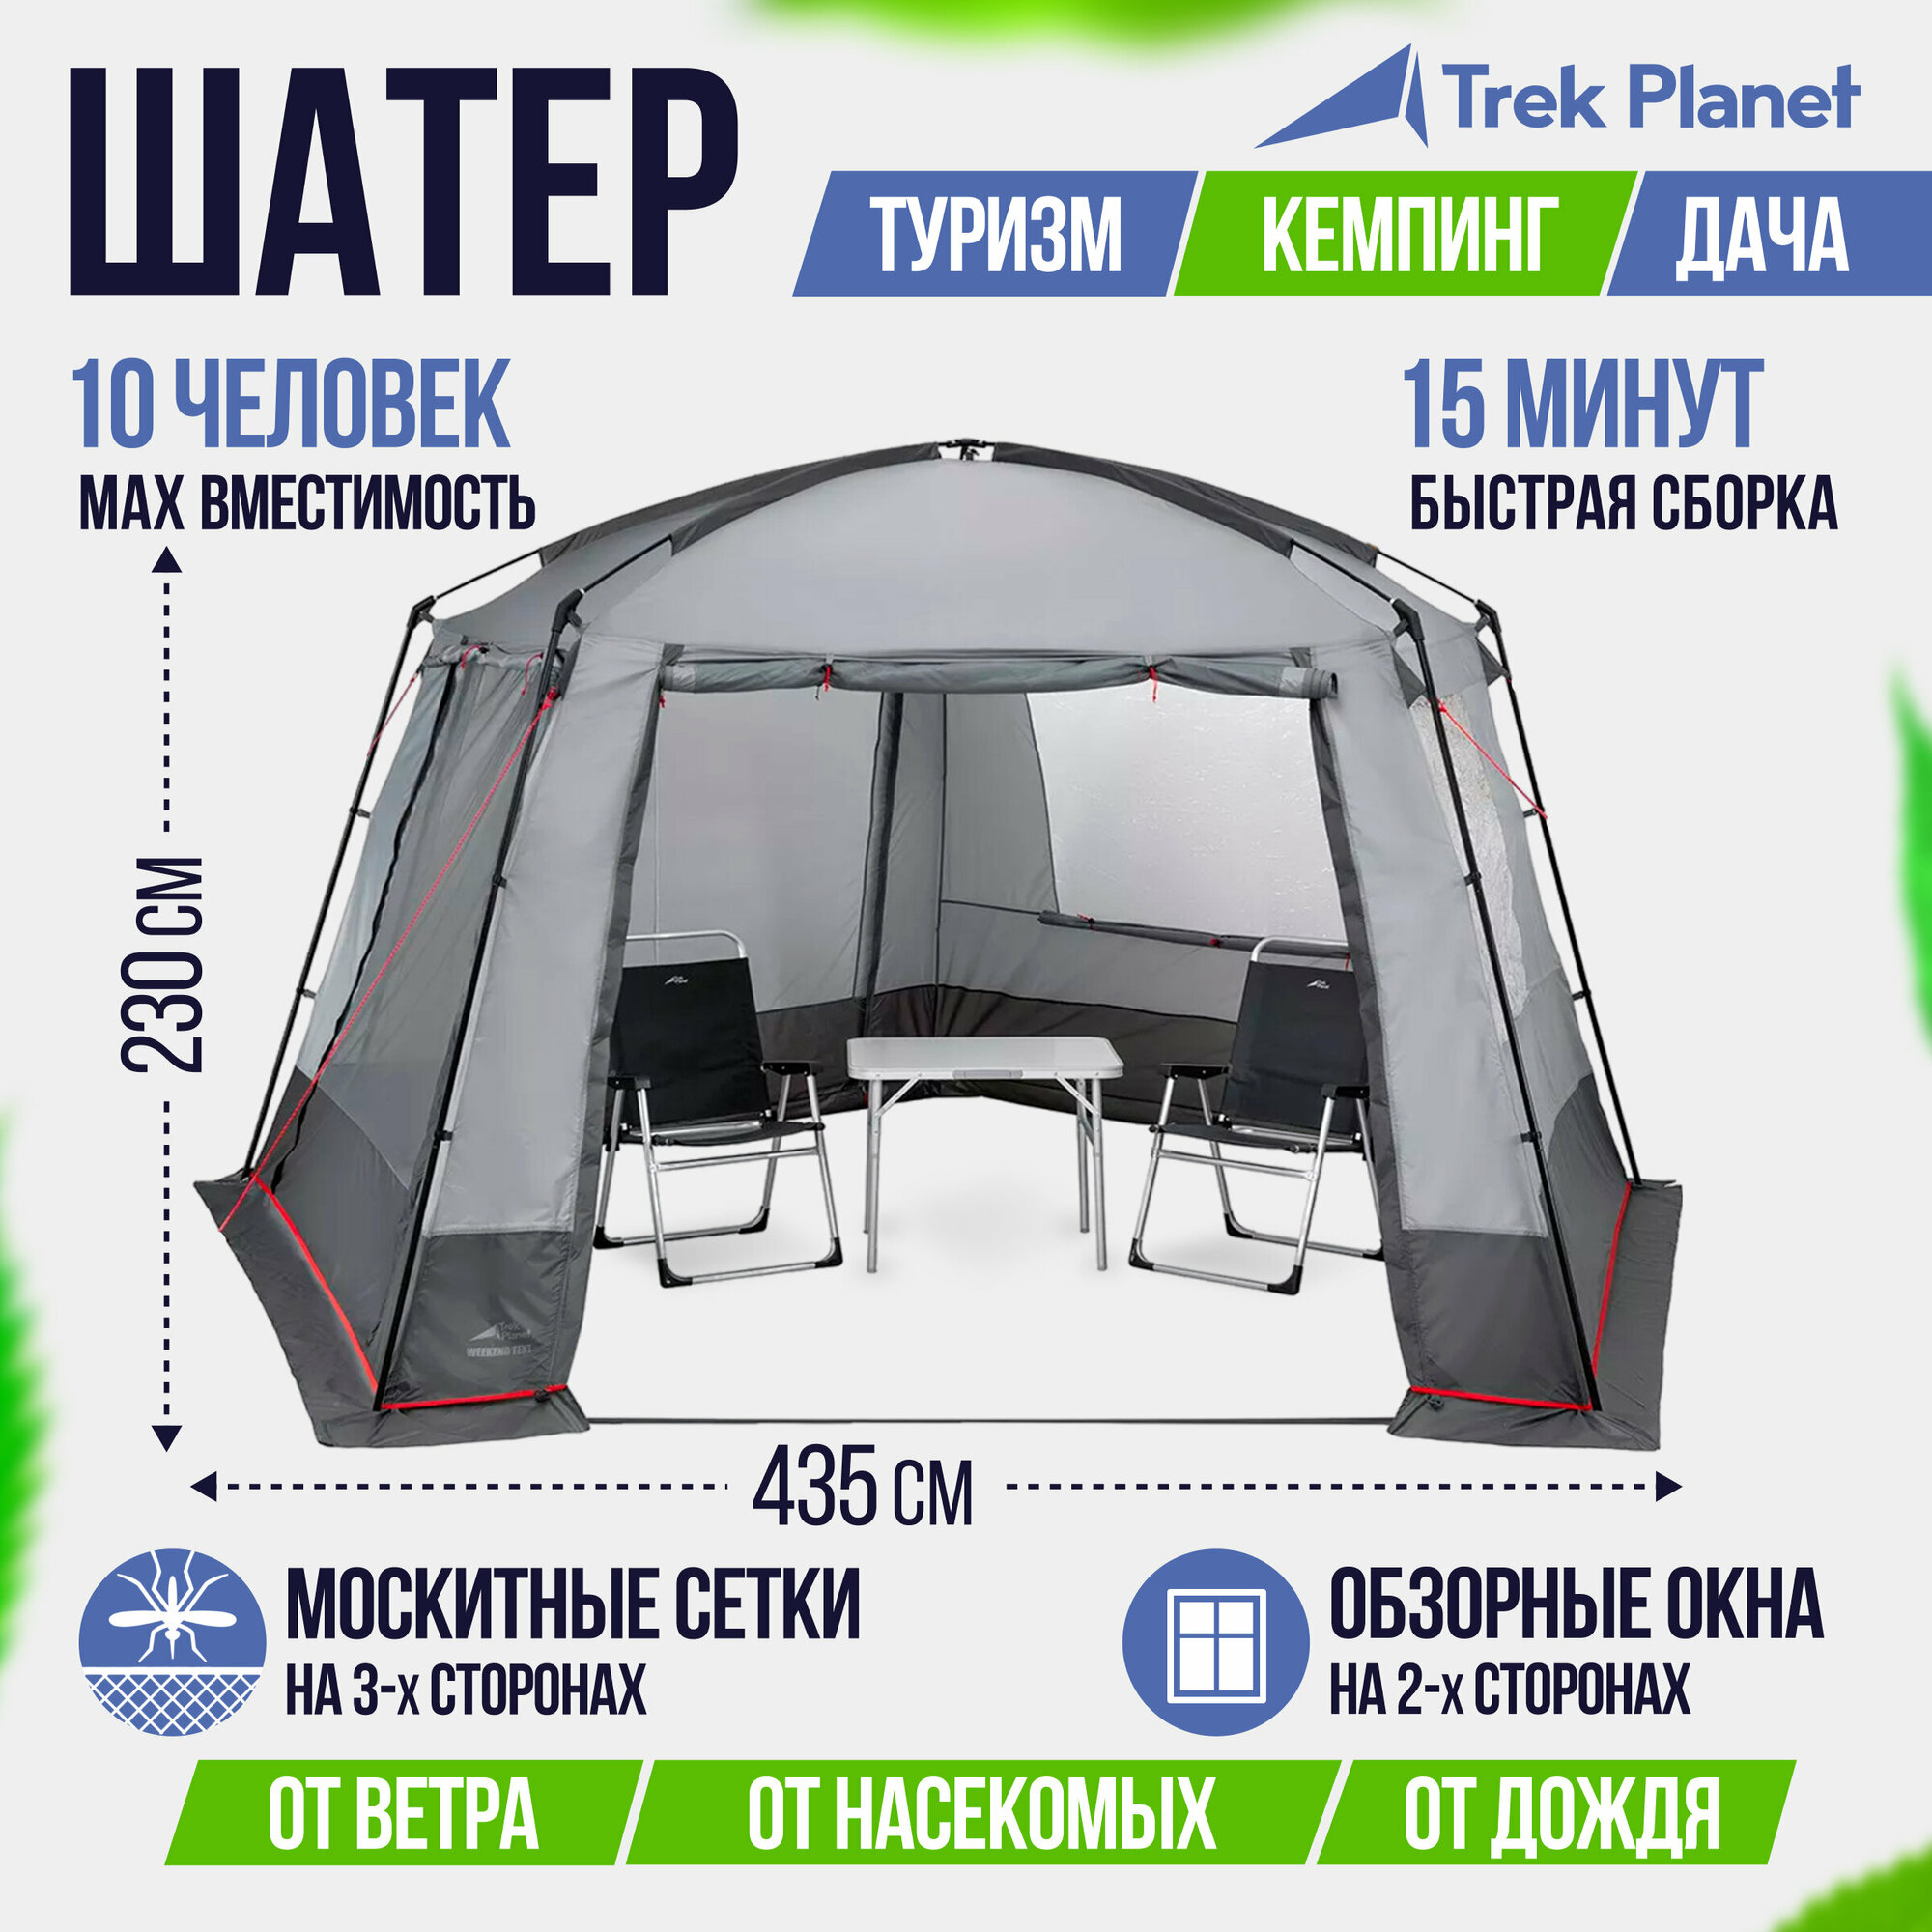 TREK PLANET Шатер-тент Weekend Tent, 435 см х 415 см х 230 см, цвет: серый/т. cерый 70219